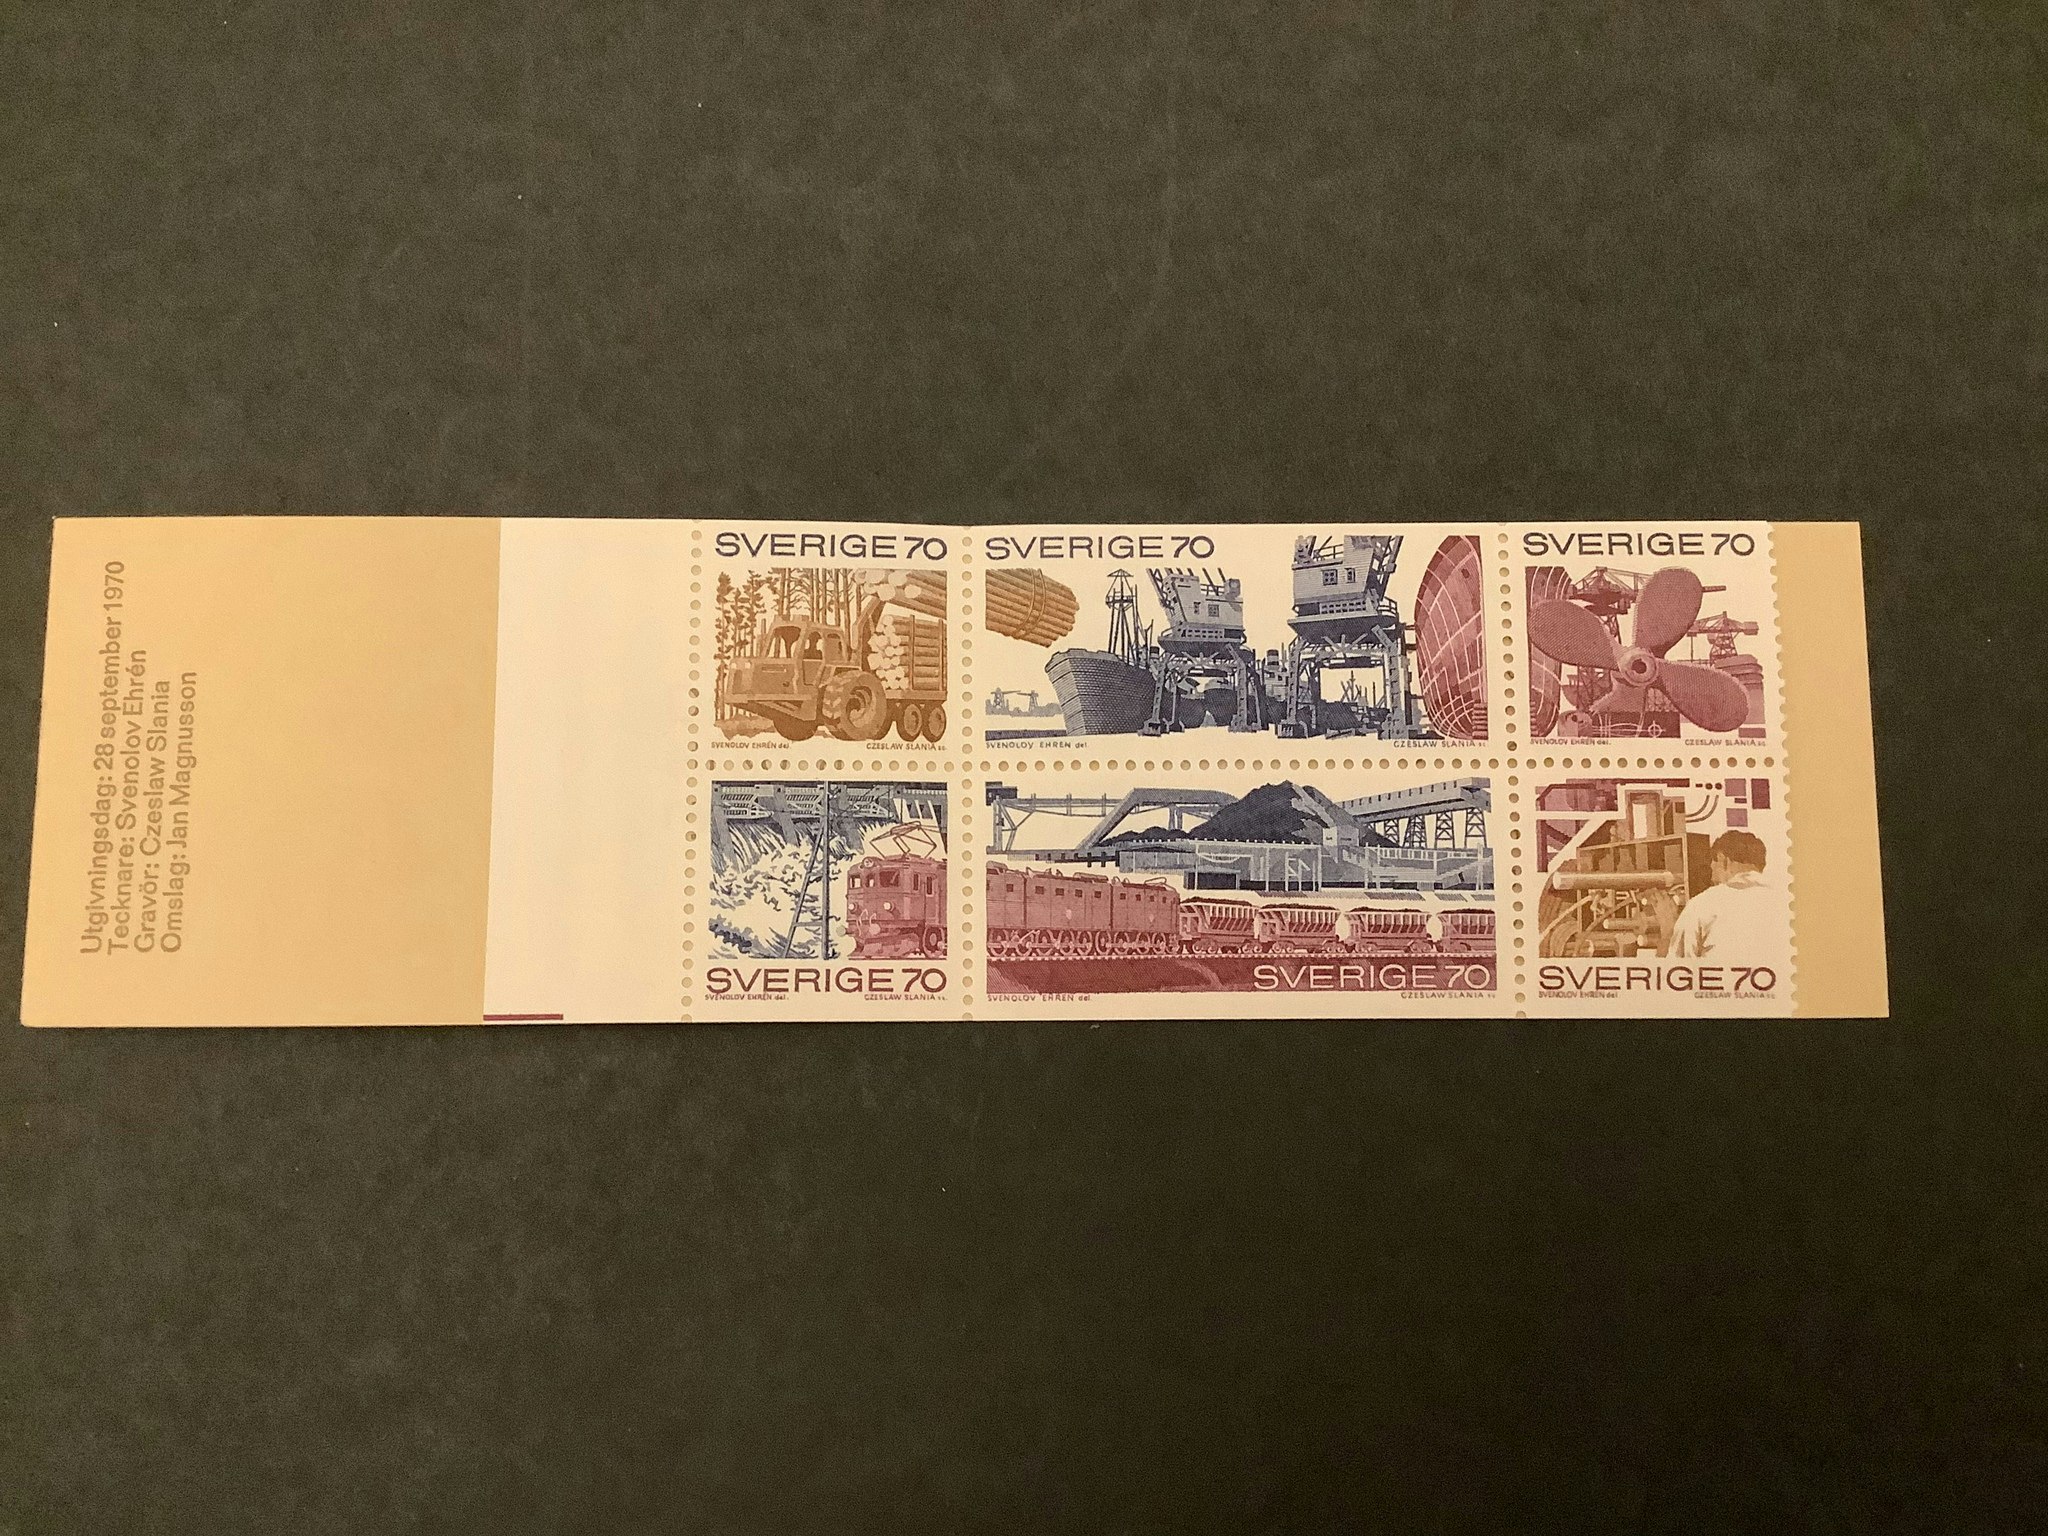 Svenskt näringsliv 1970 postfriskt häfte